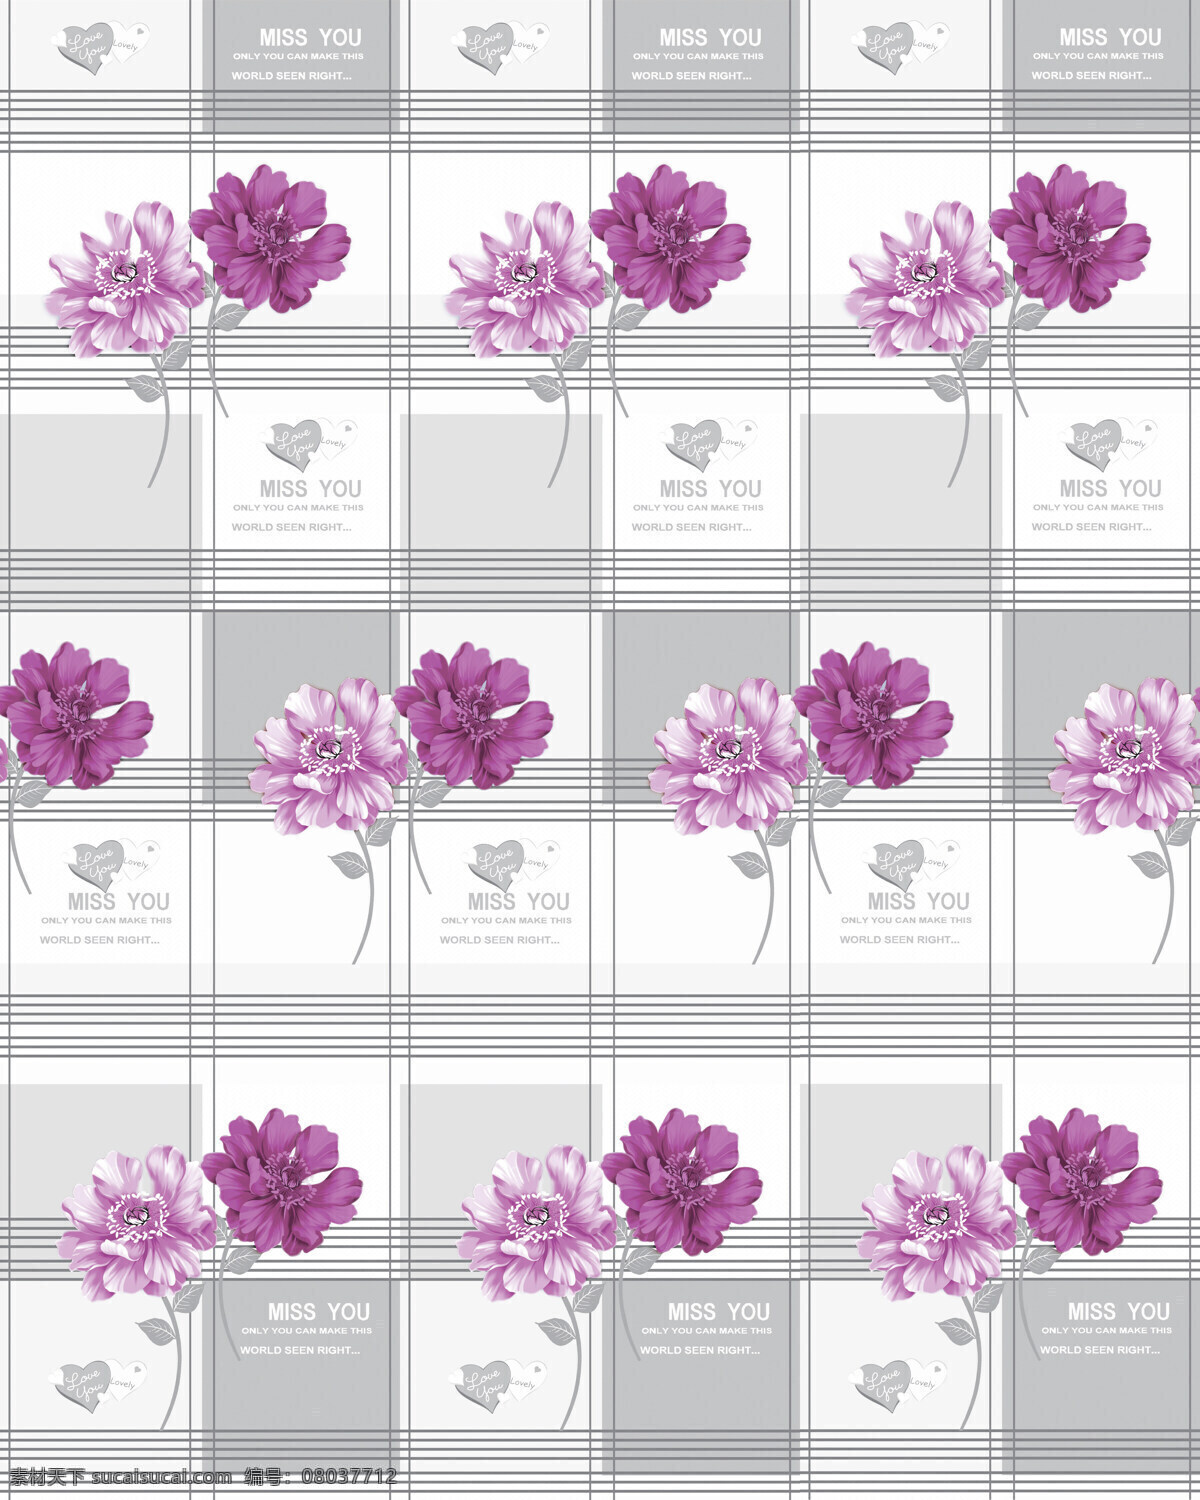 布纹 底纹边框 方格 花朵 连续花纹 牡丹 设计素材 时尚花朵 紫色 心 想念 装饰花纹 移门 移门图案 装饰素材